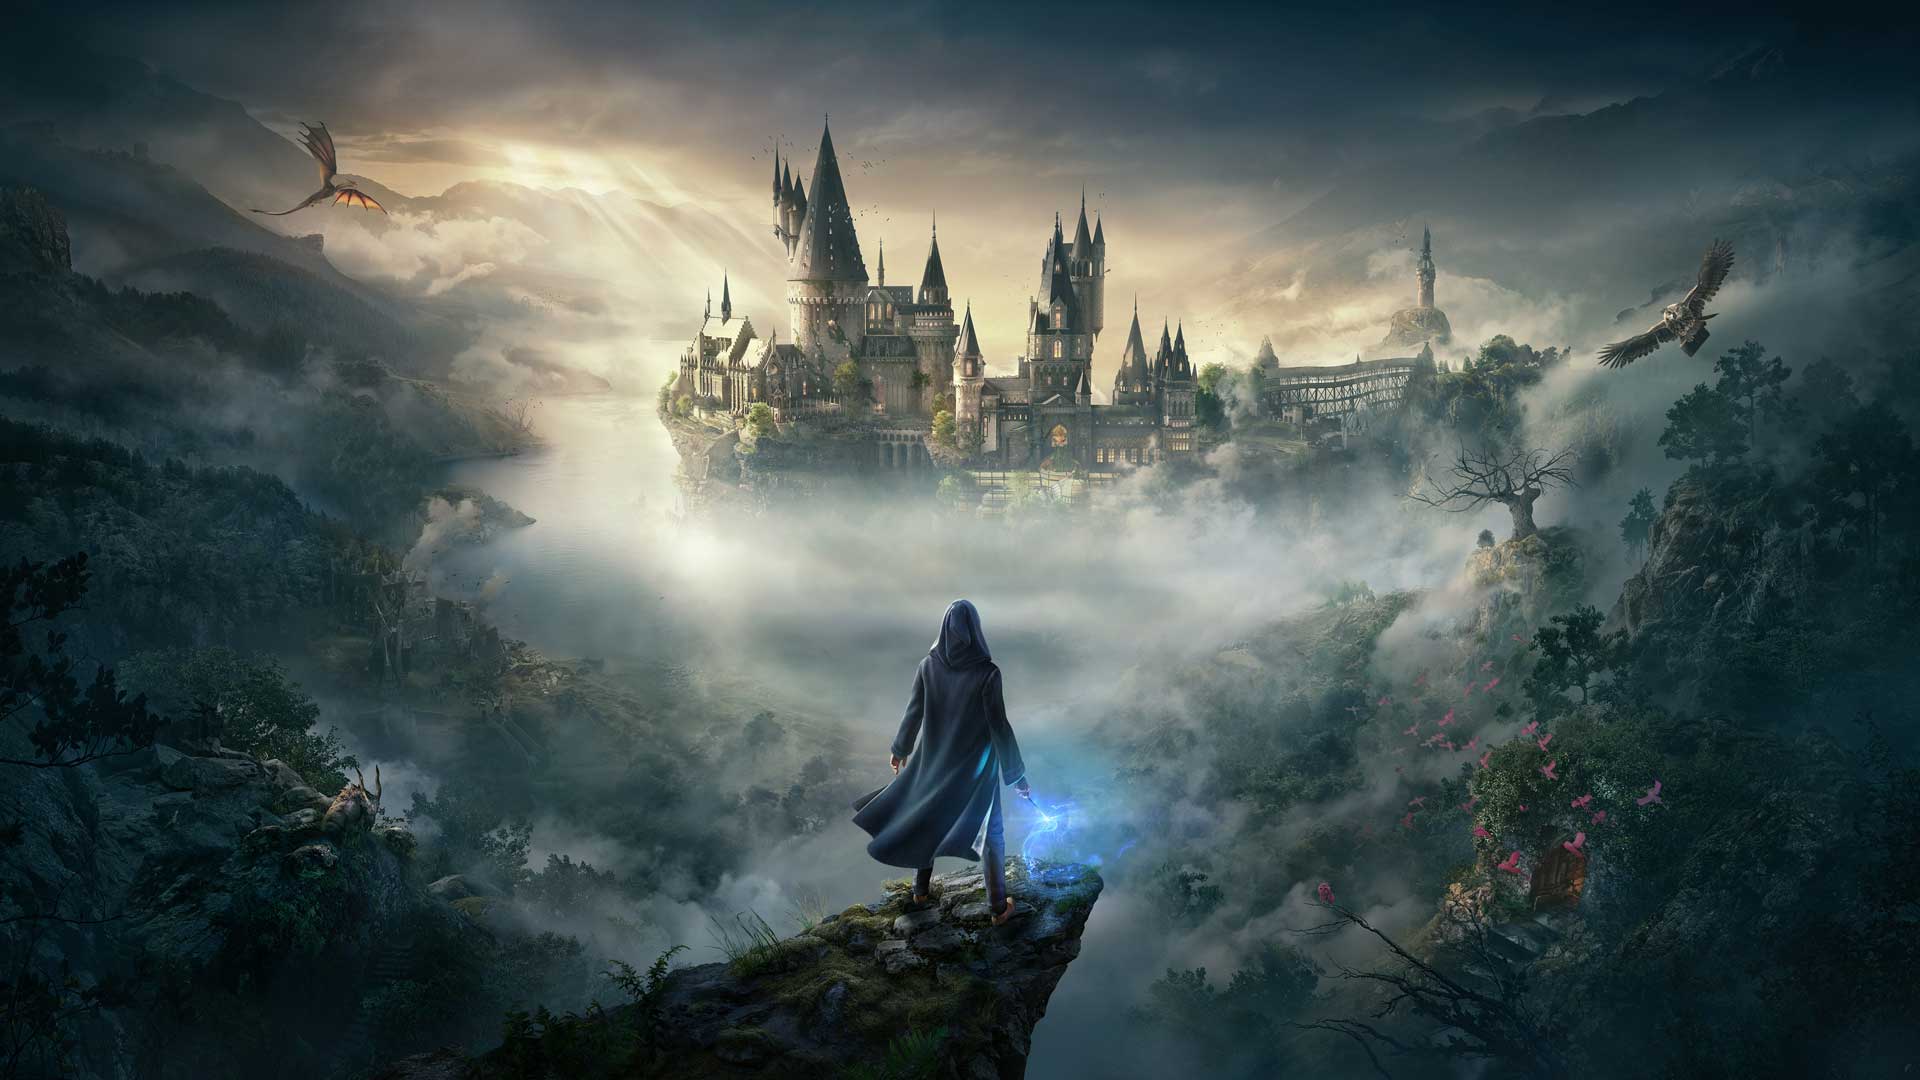 بازی Hogwarts Legacy با محوریت چرخیدن در جهان جادویی هری پاتر